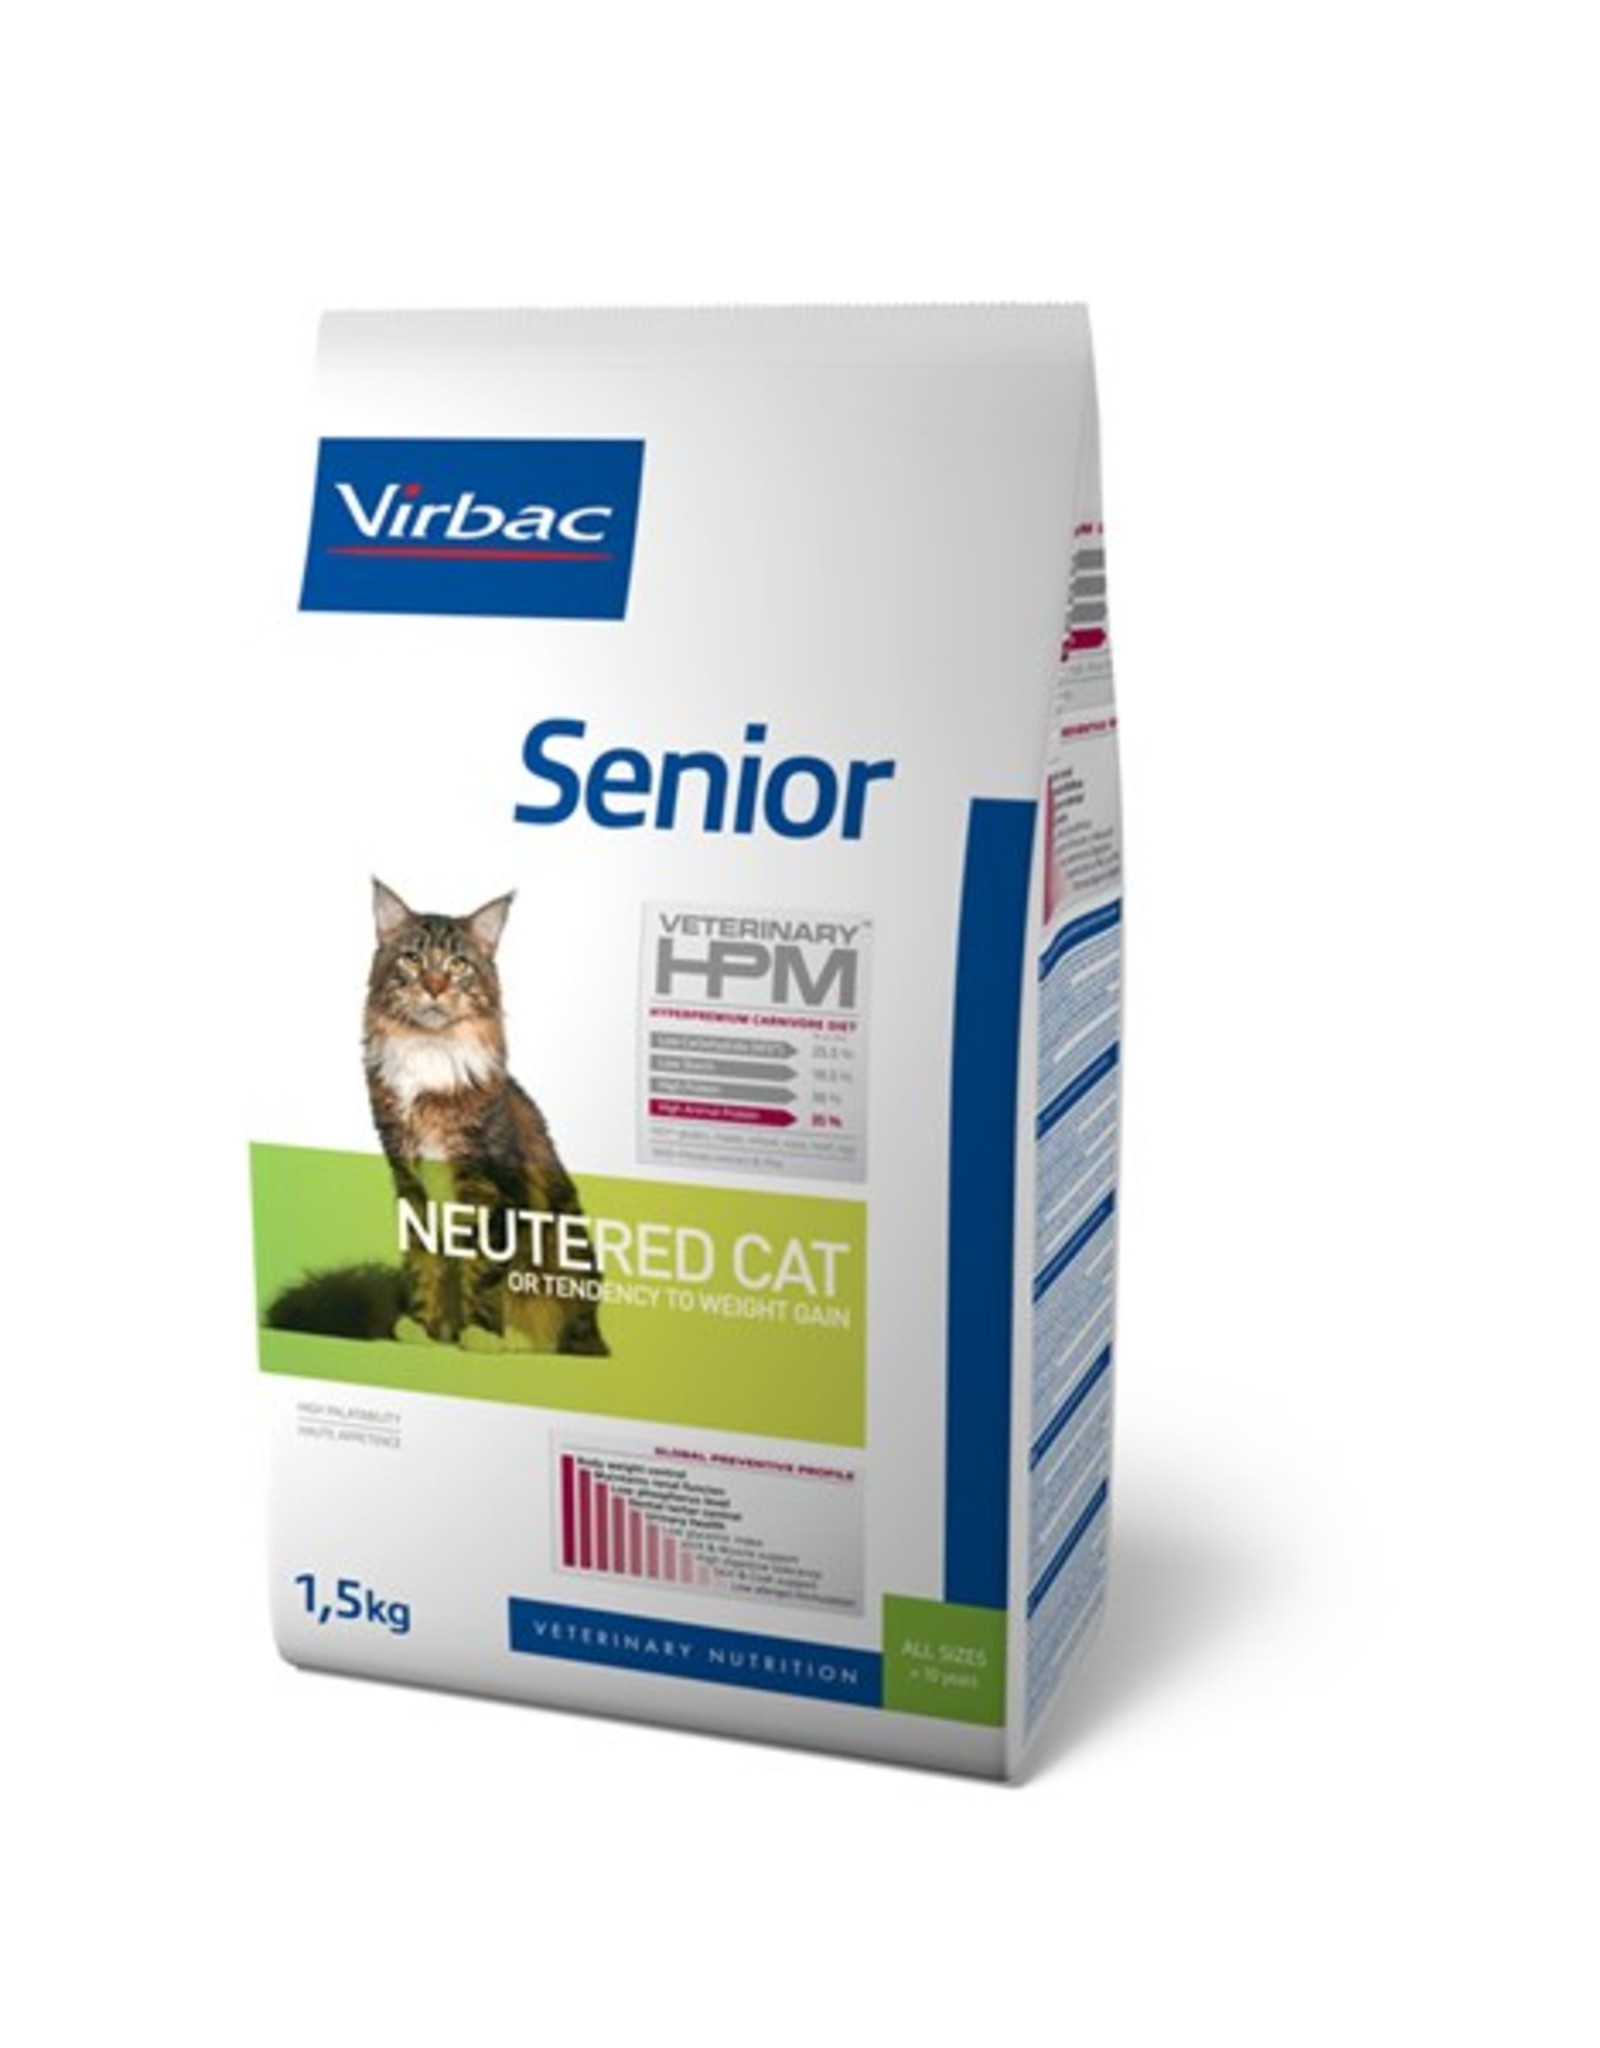 Virbac Virbac Hpm Cat Neutered Senior 1,5kg